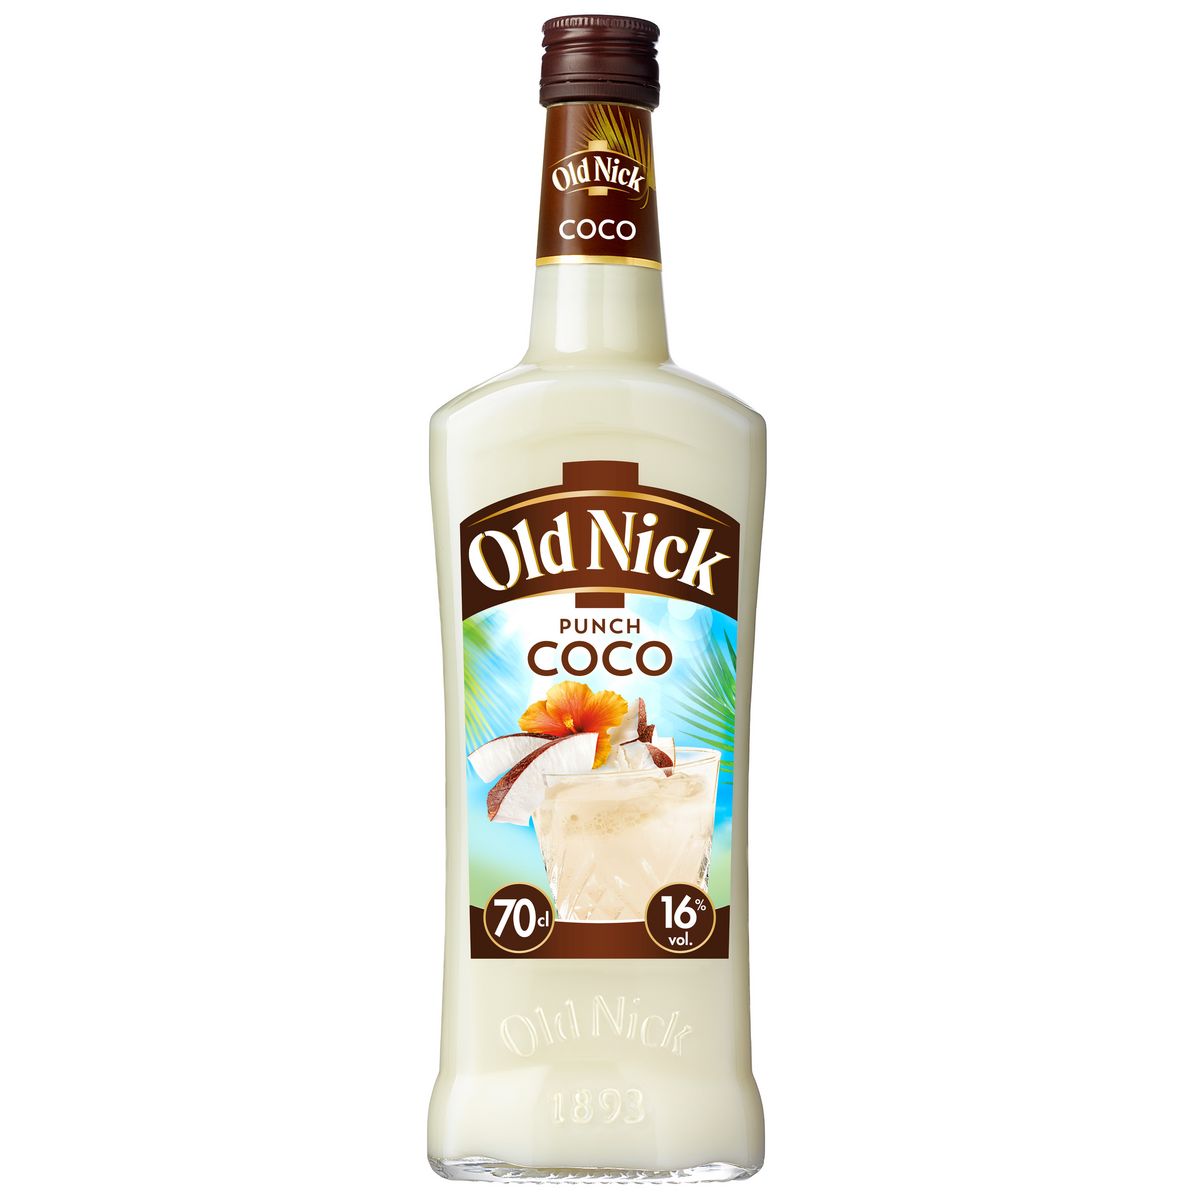 OLD NICK Punch coco à base de rhum 16% 70cl